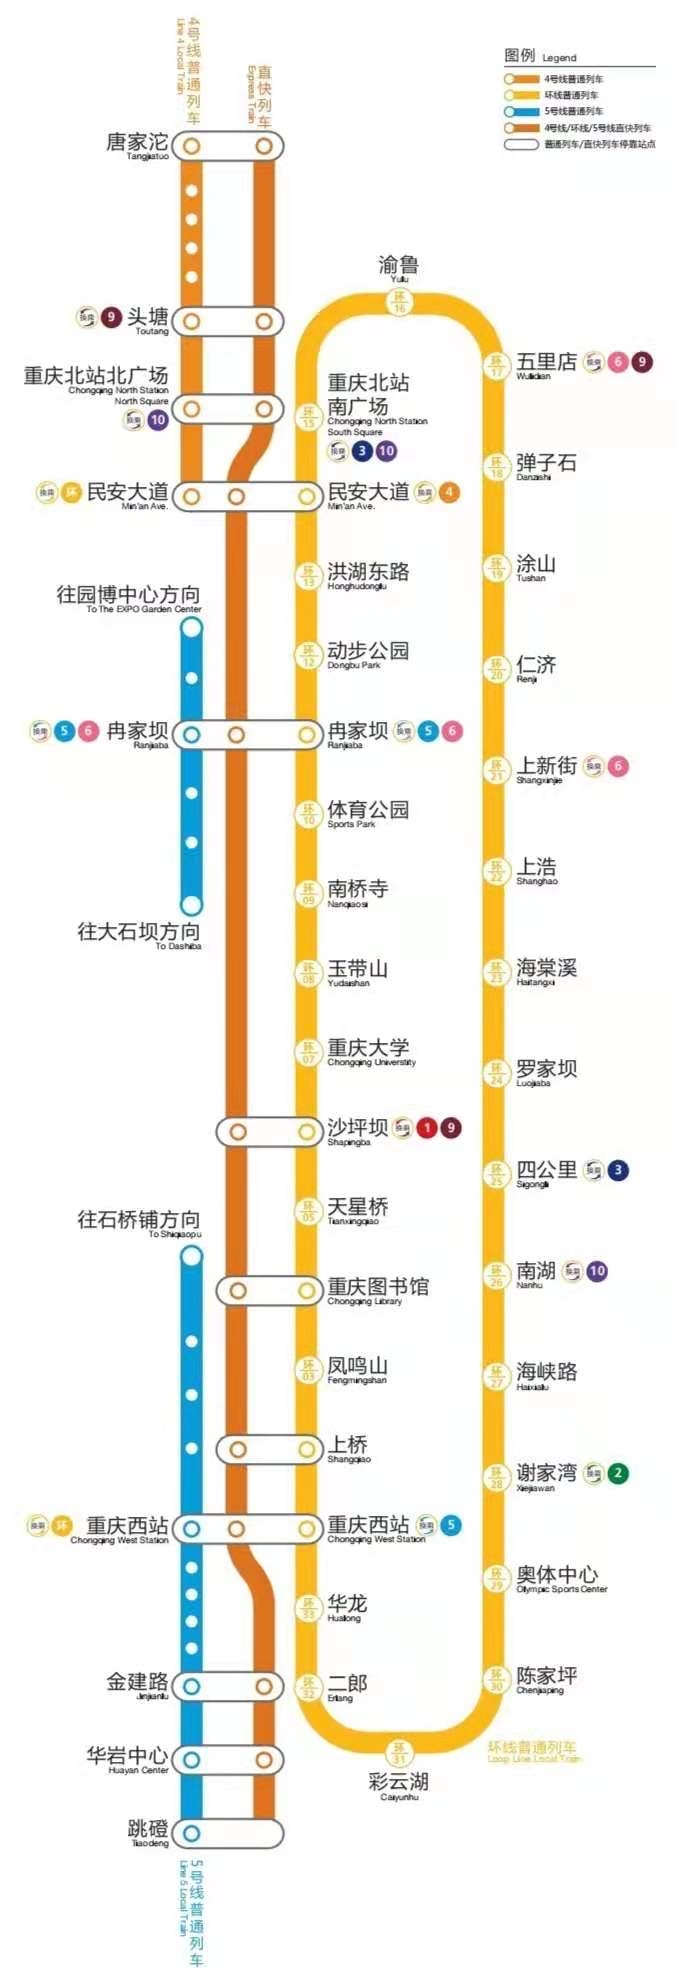 重庆轨道环线外环图片